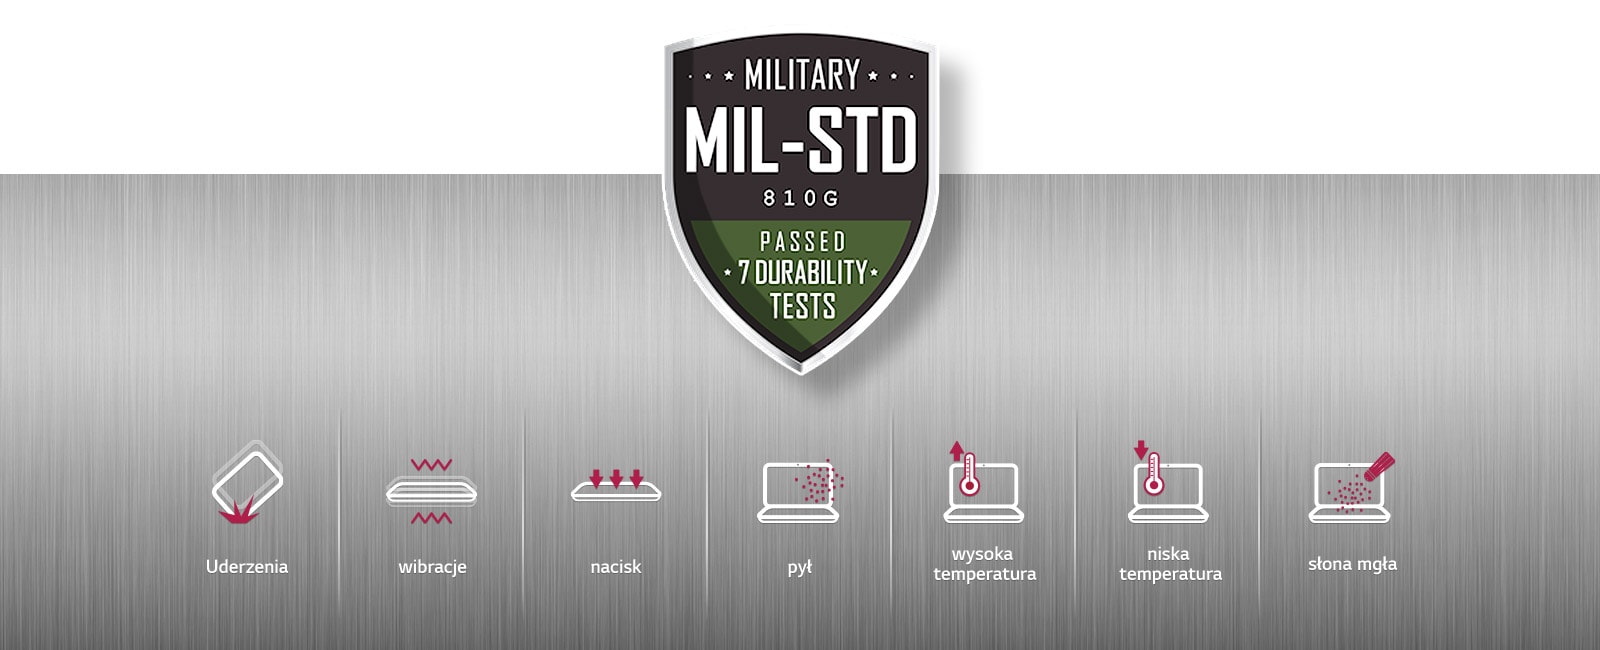 Test trwałości i niezawodności wg standardów MIL-STD-810G